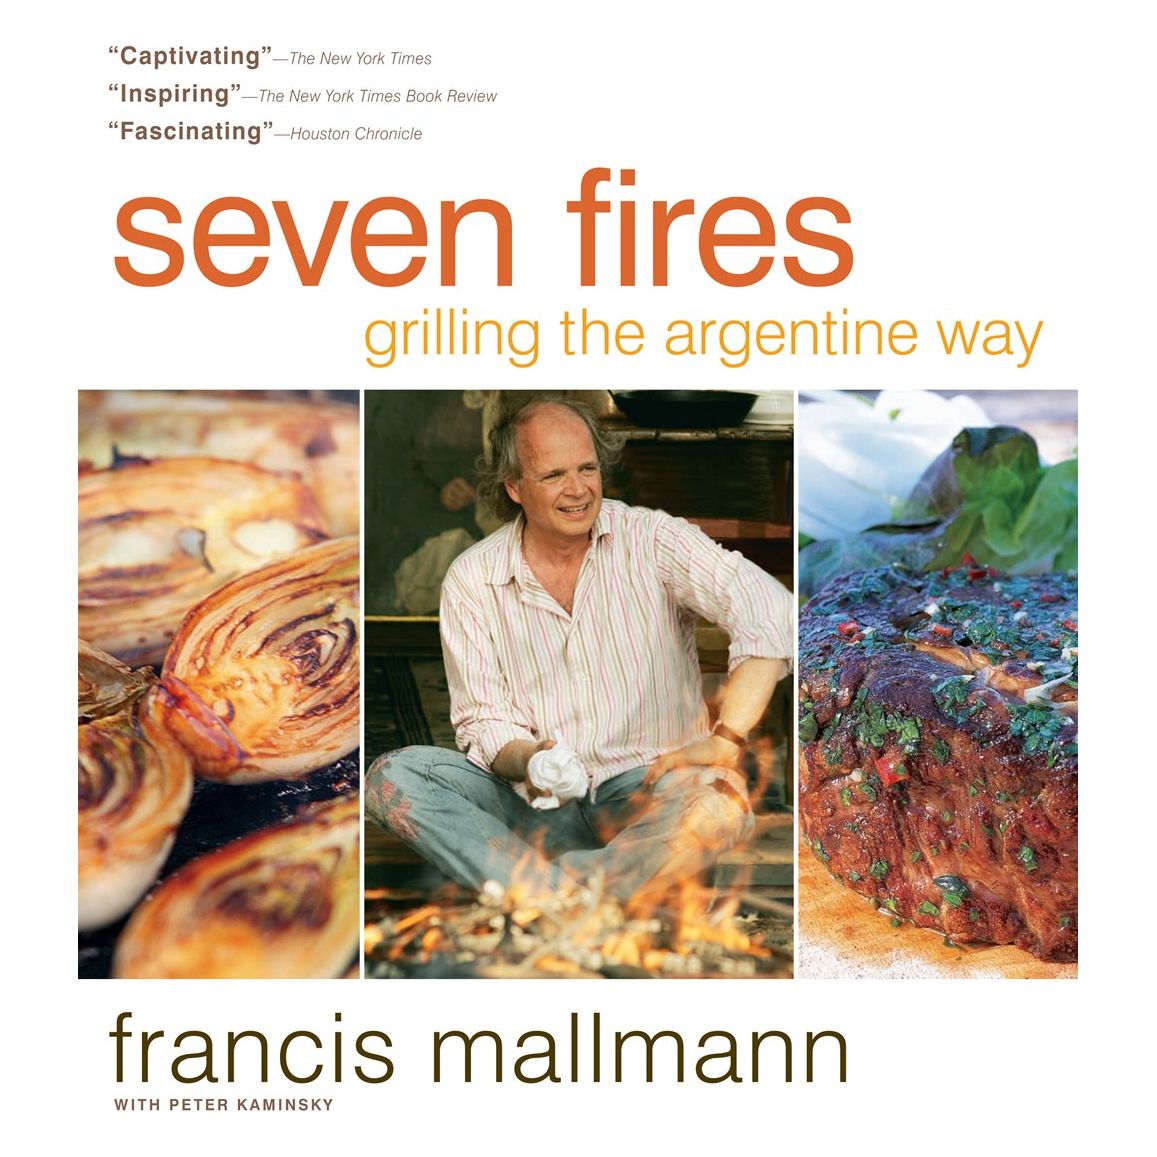 Seven Fires (Francis Mallman)